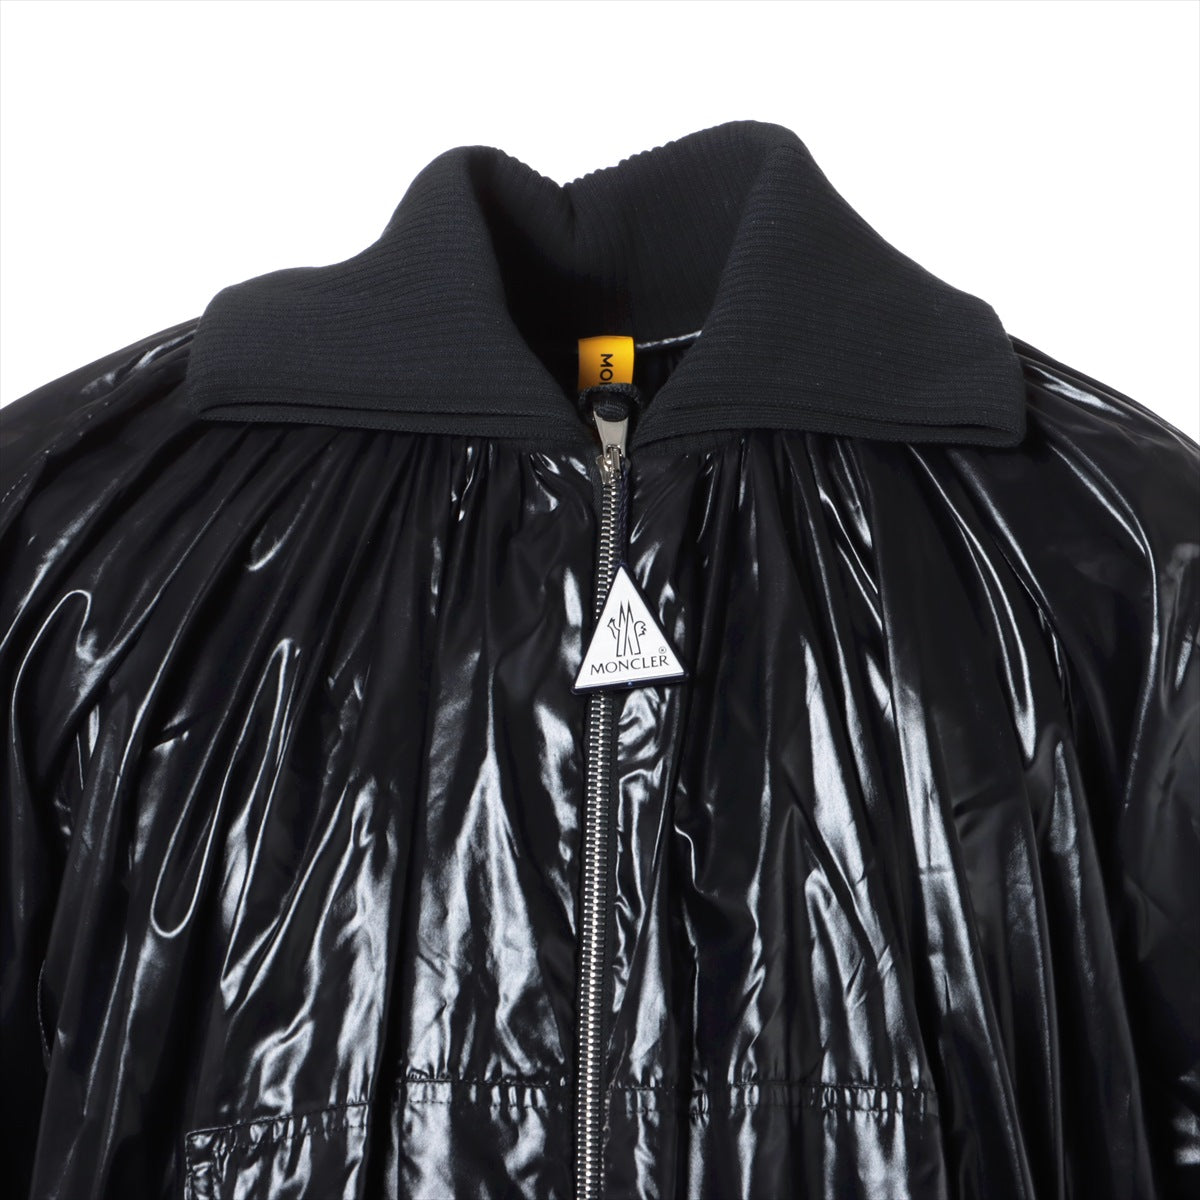 モンクレールジーニアス 1952 20年 ナイロン ブルゾン 00 メンズ ブラック  DIAMOND デザインジャケット